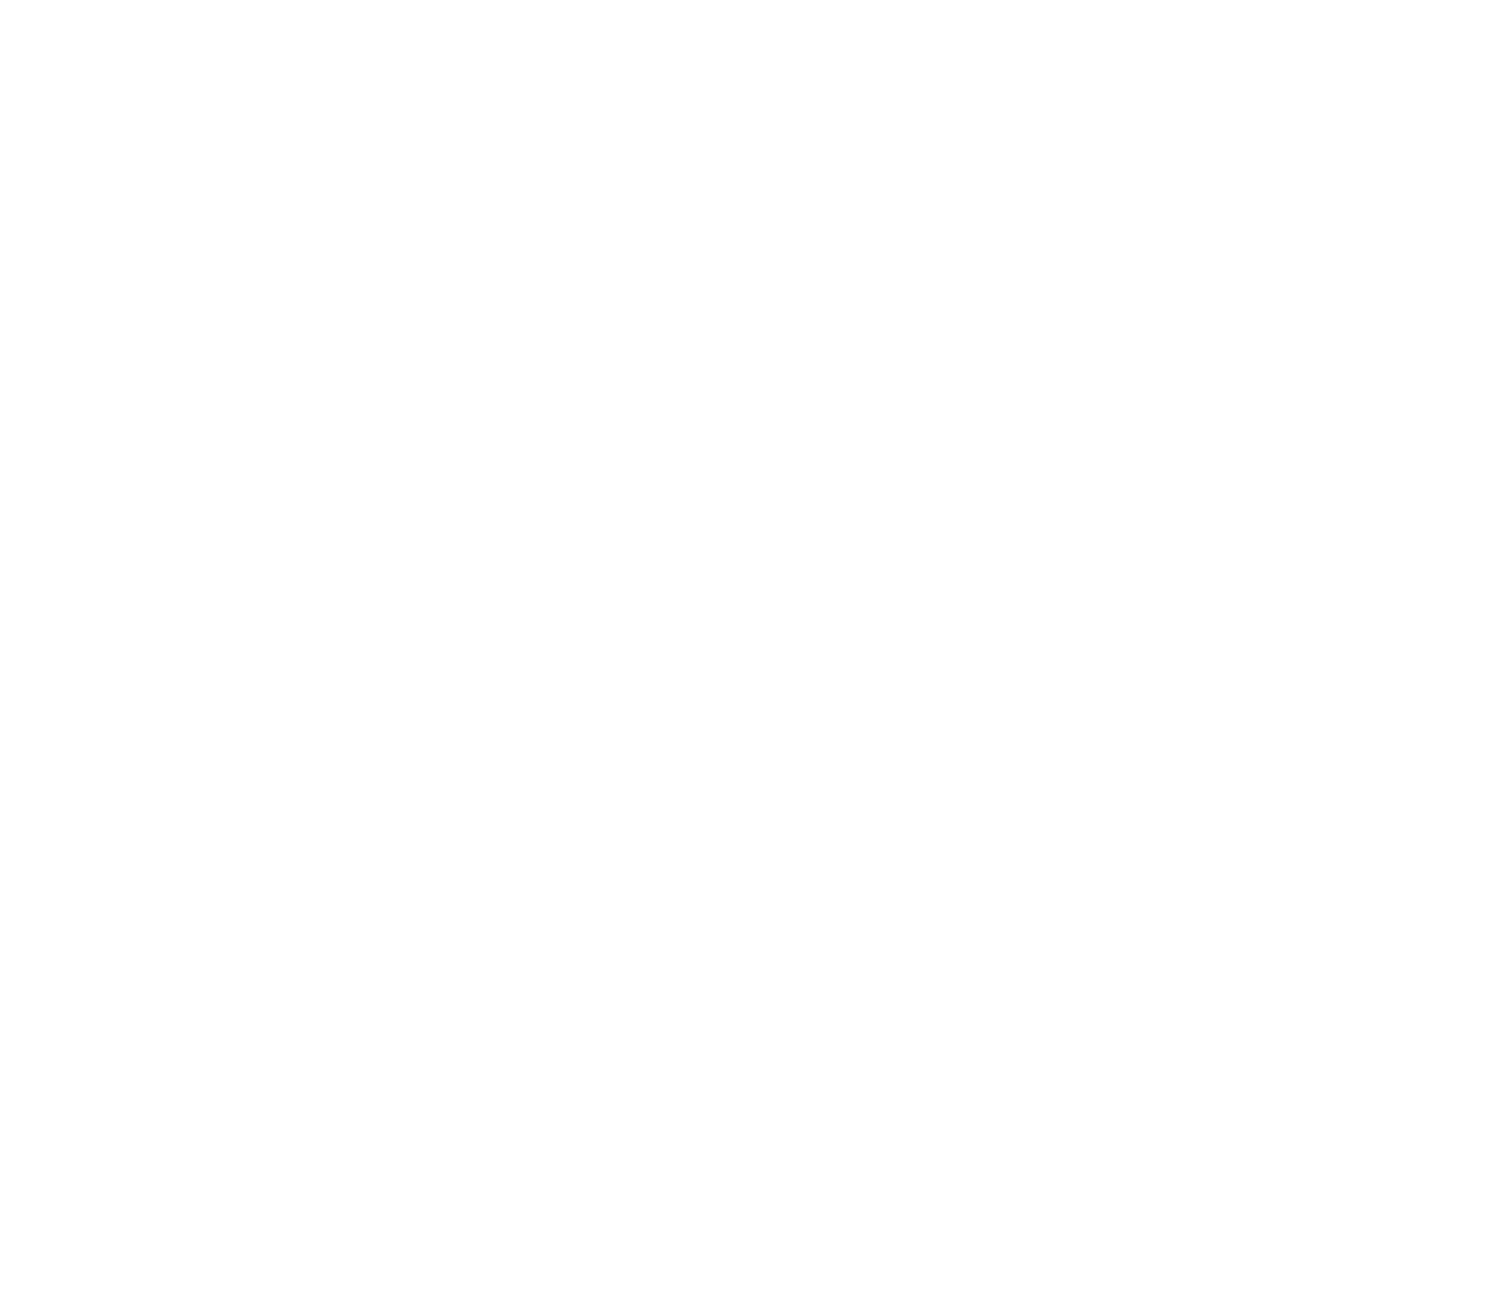 KANAYAMA 5 ROUTES